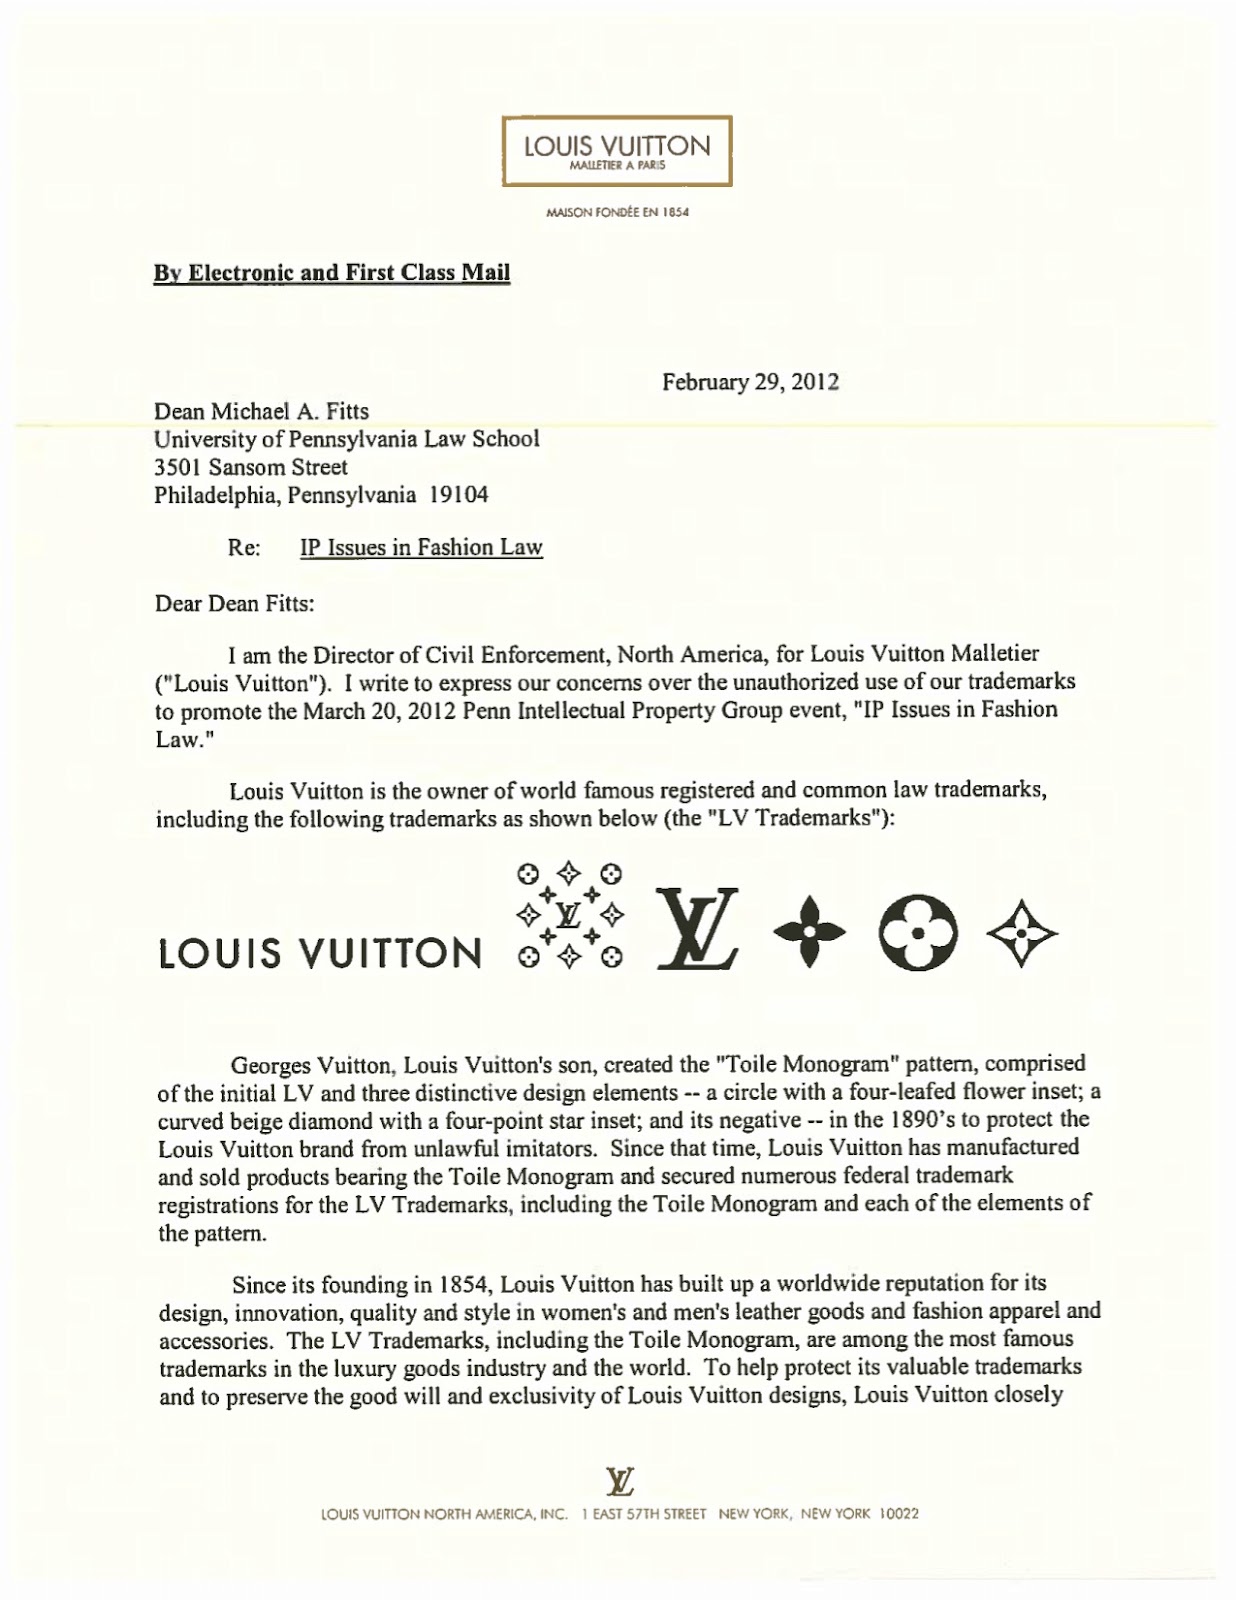 Louis Vuitton Malletier Jobs, Careers